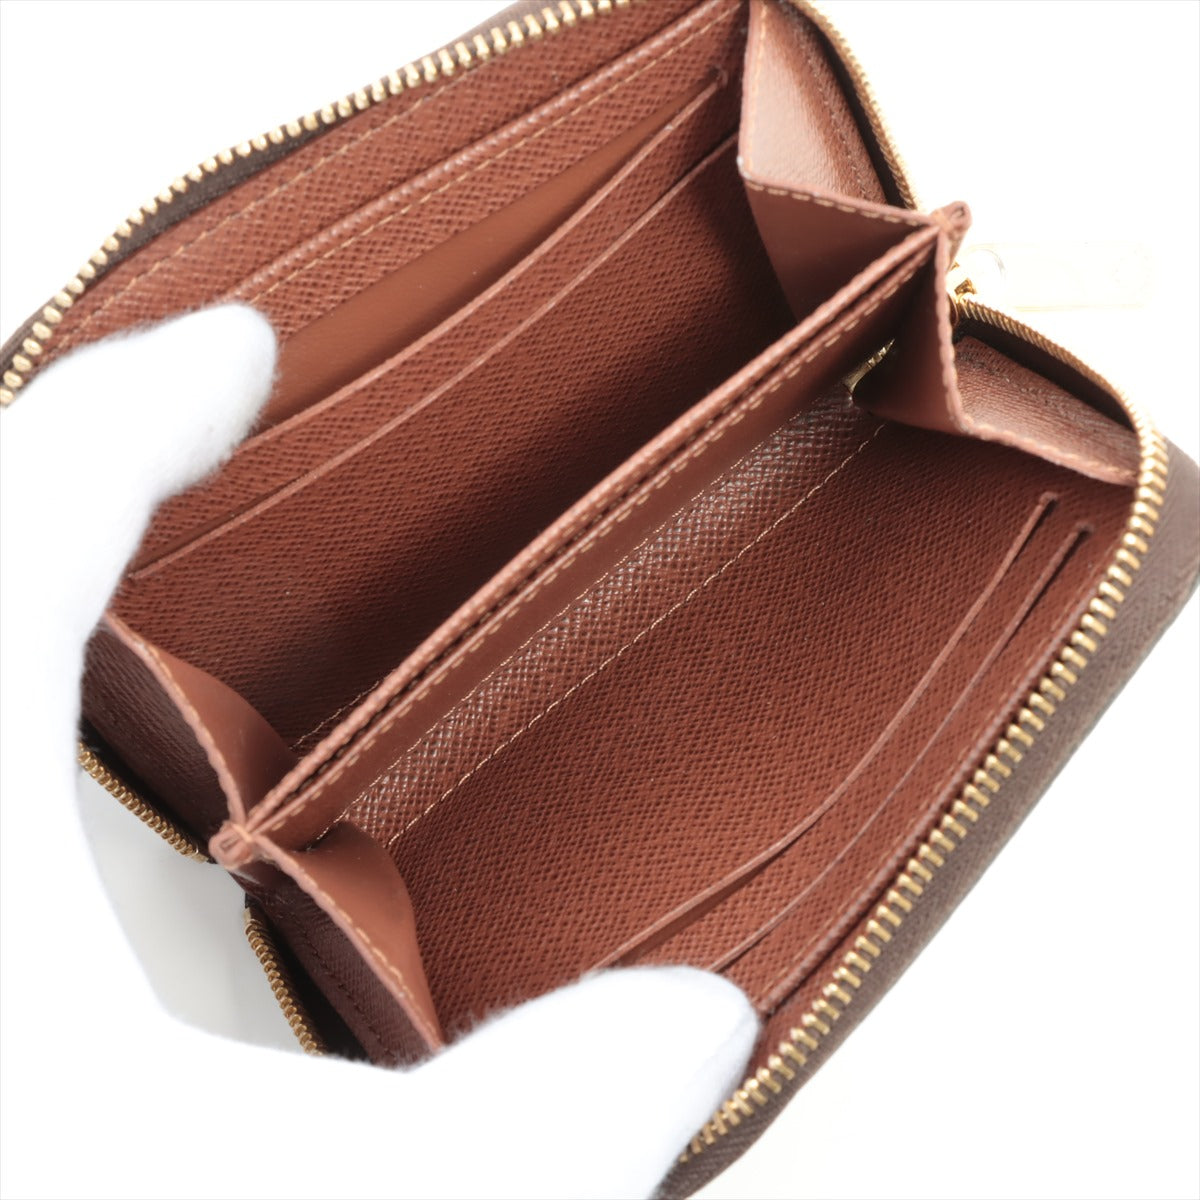 Louis Vuitton Monogram Zippy coins Perth M60067 Brown Coin purse